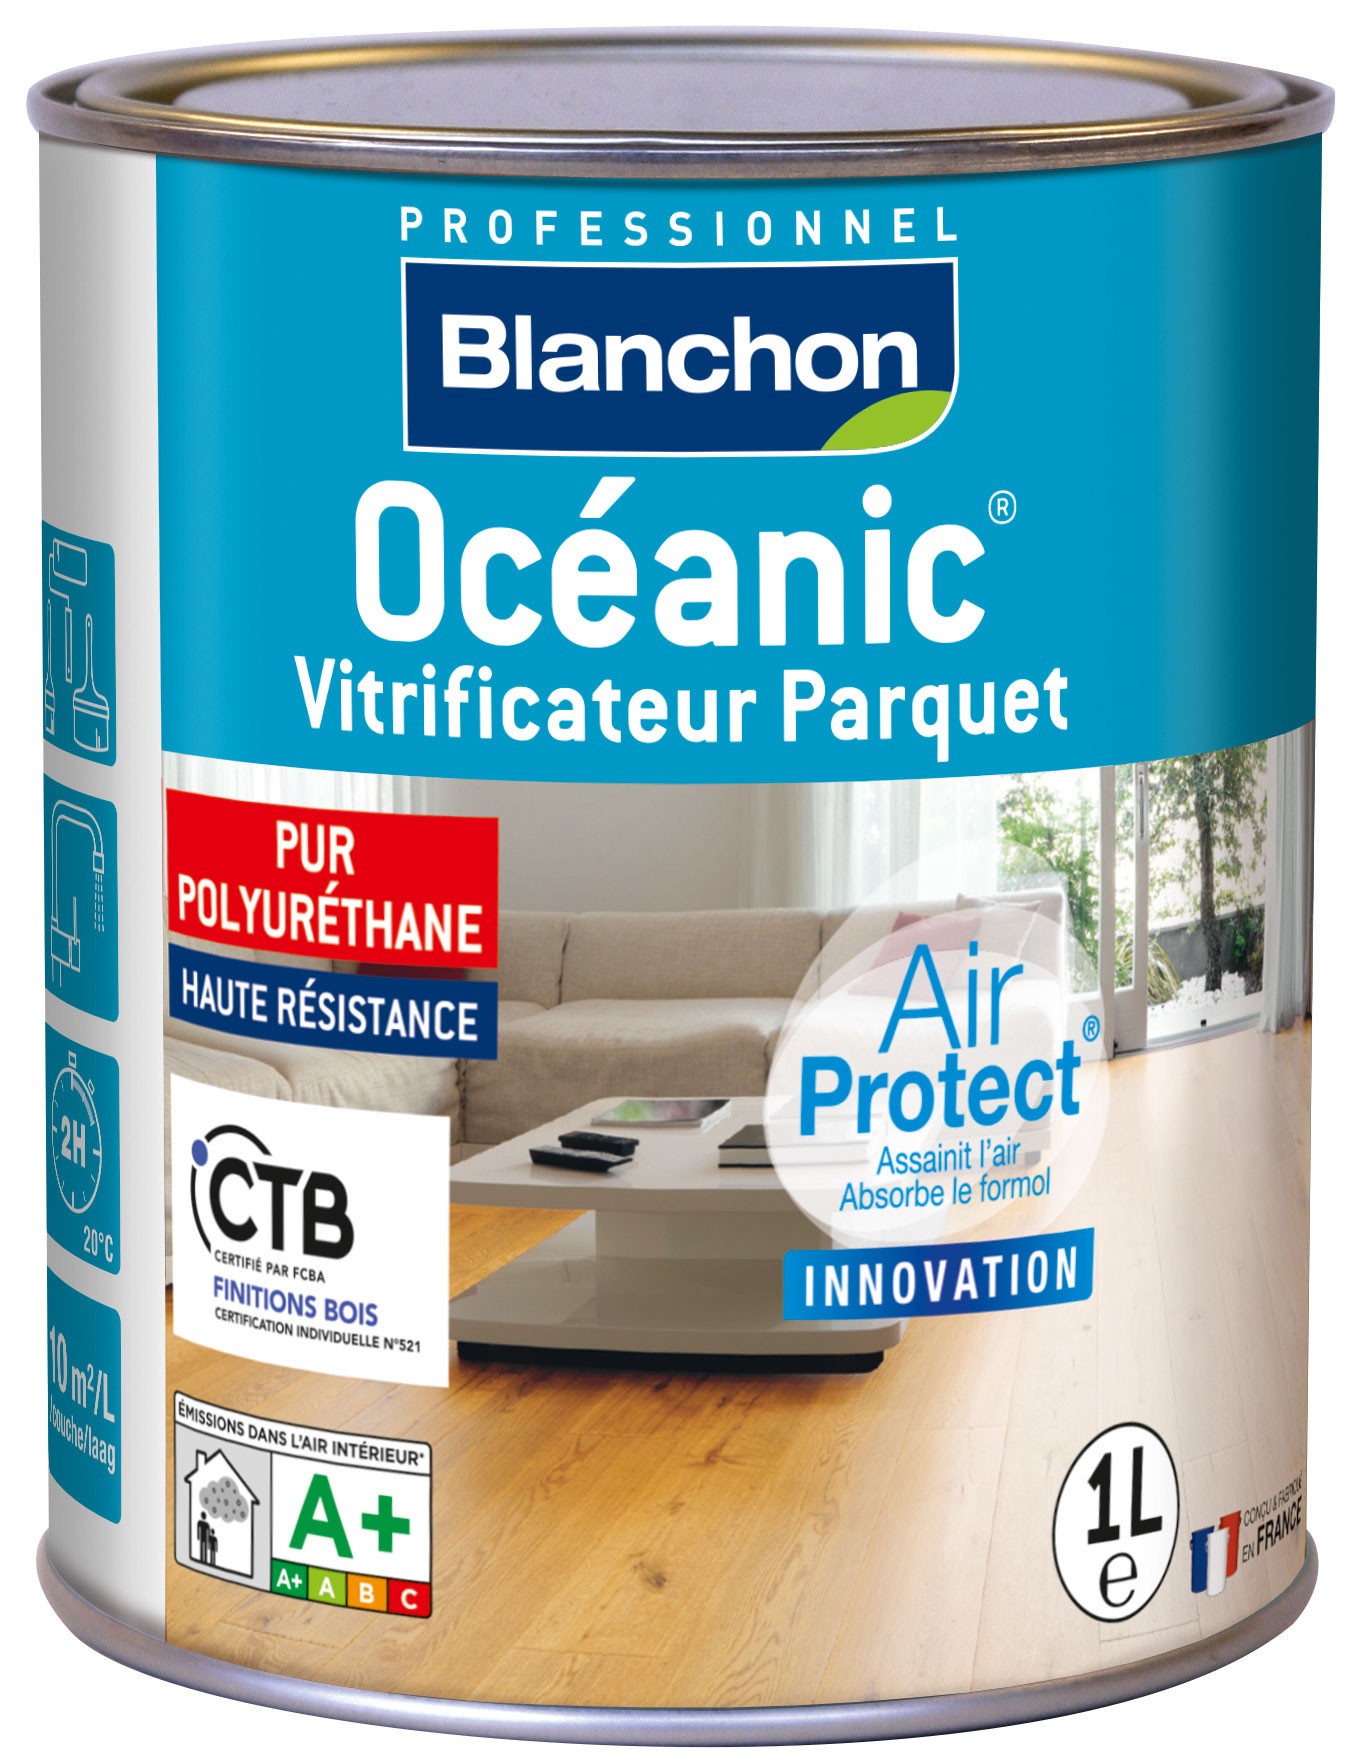 Acheter Blanchon Vitrificateur parquet Oceanic - 5 L - Bois brut en ligne